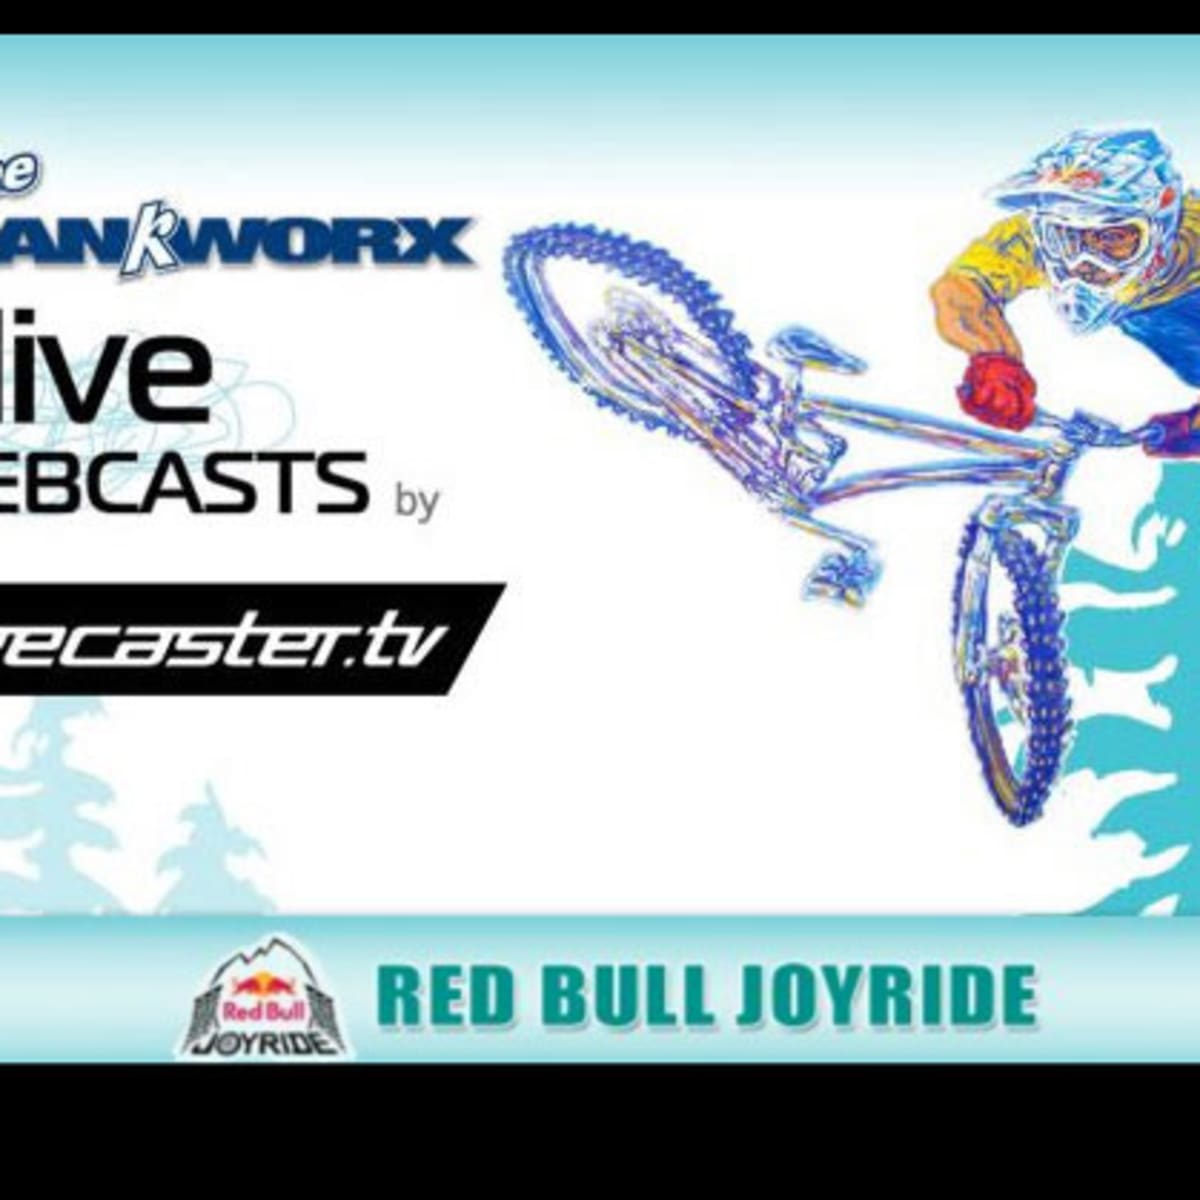 Crankworx Red Bull Joyride Slopestyle